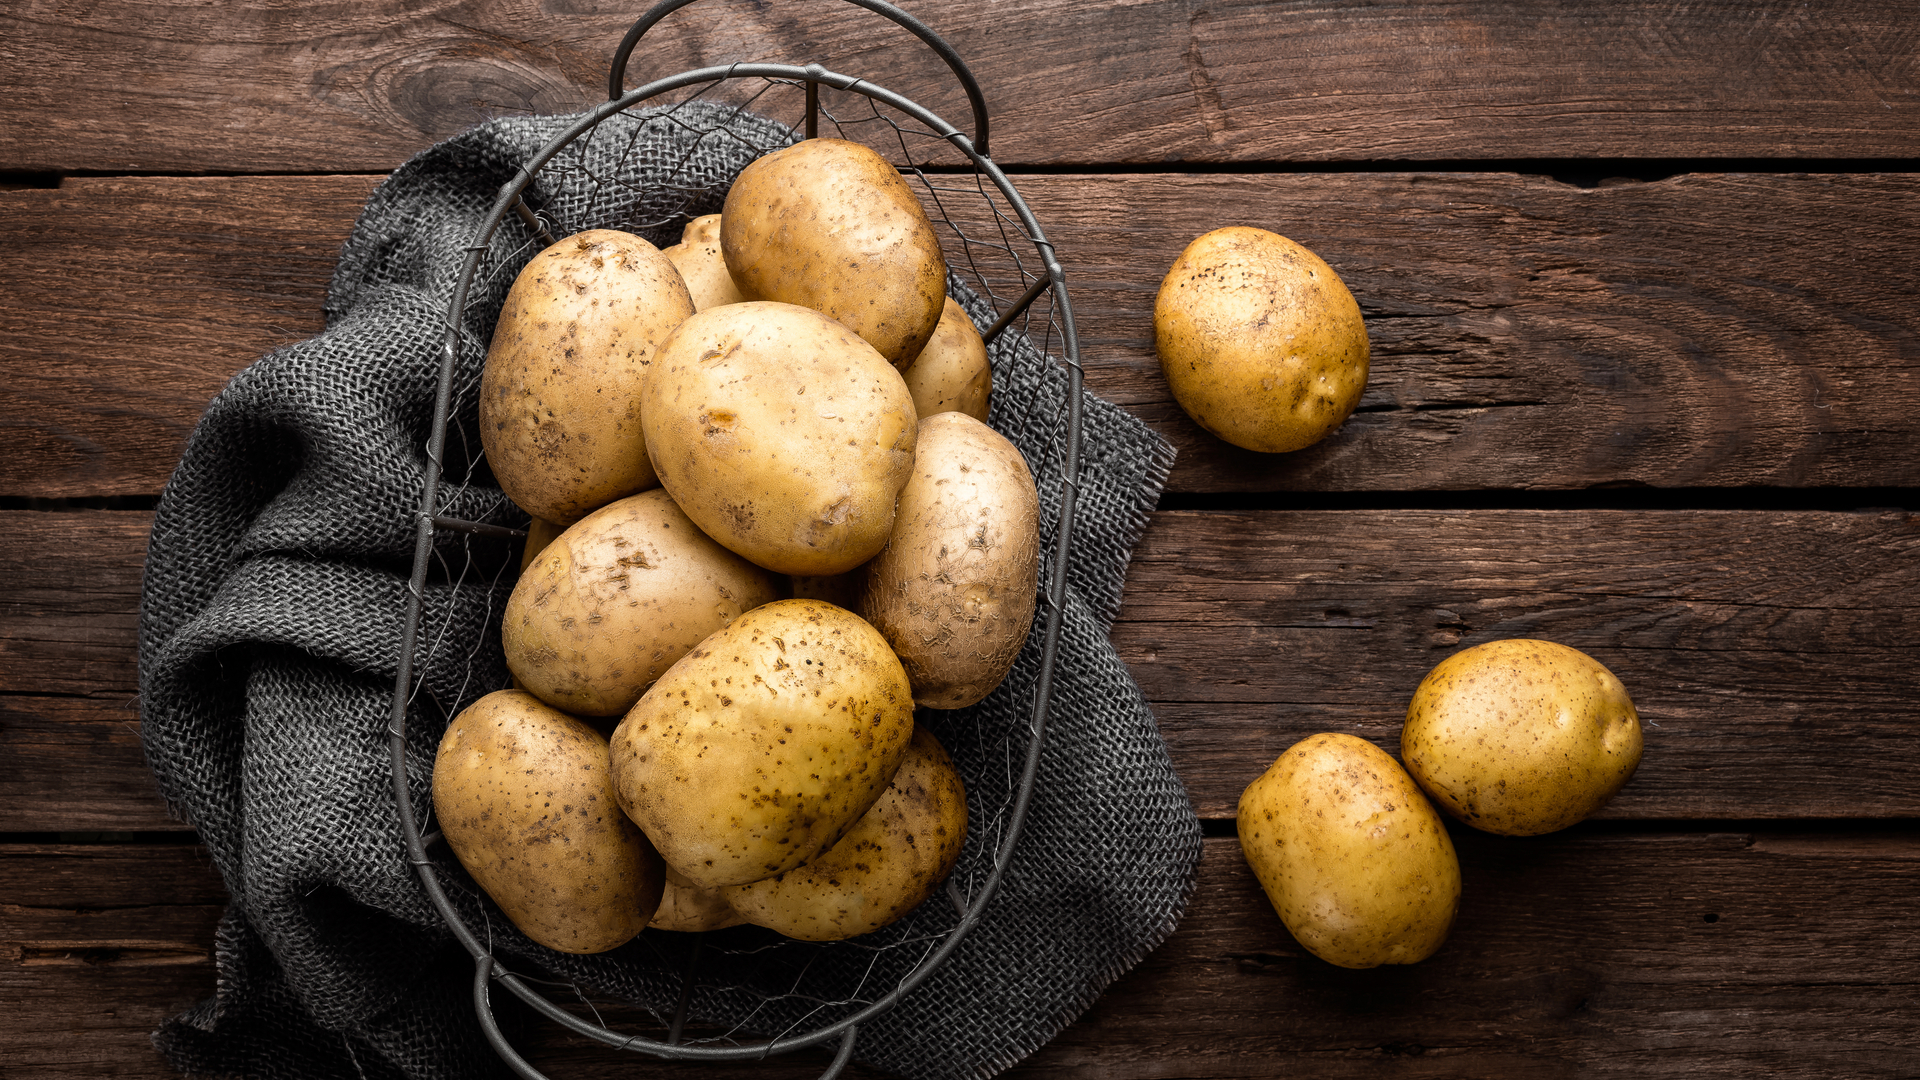 Czy ziemniaki zwiększają ryzyko wysokiego ciśnienia krwi i śmierci?